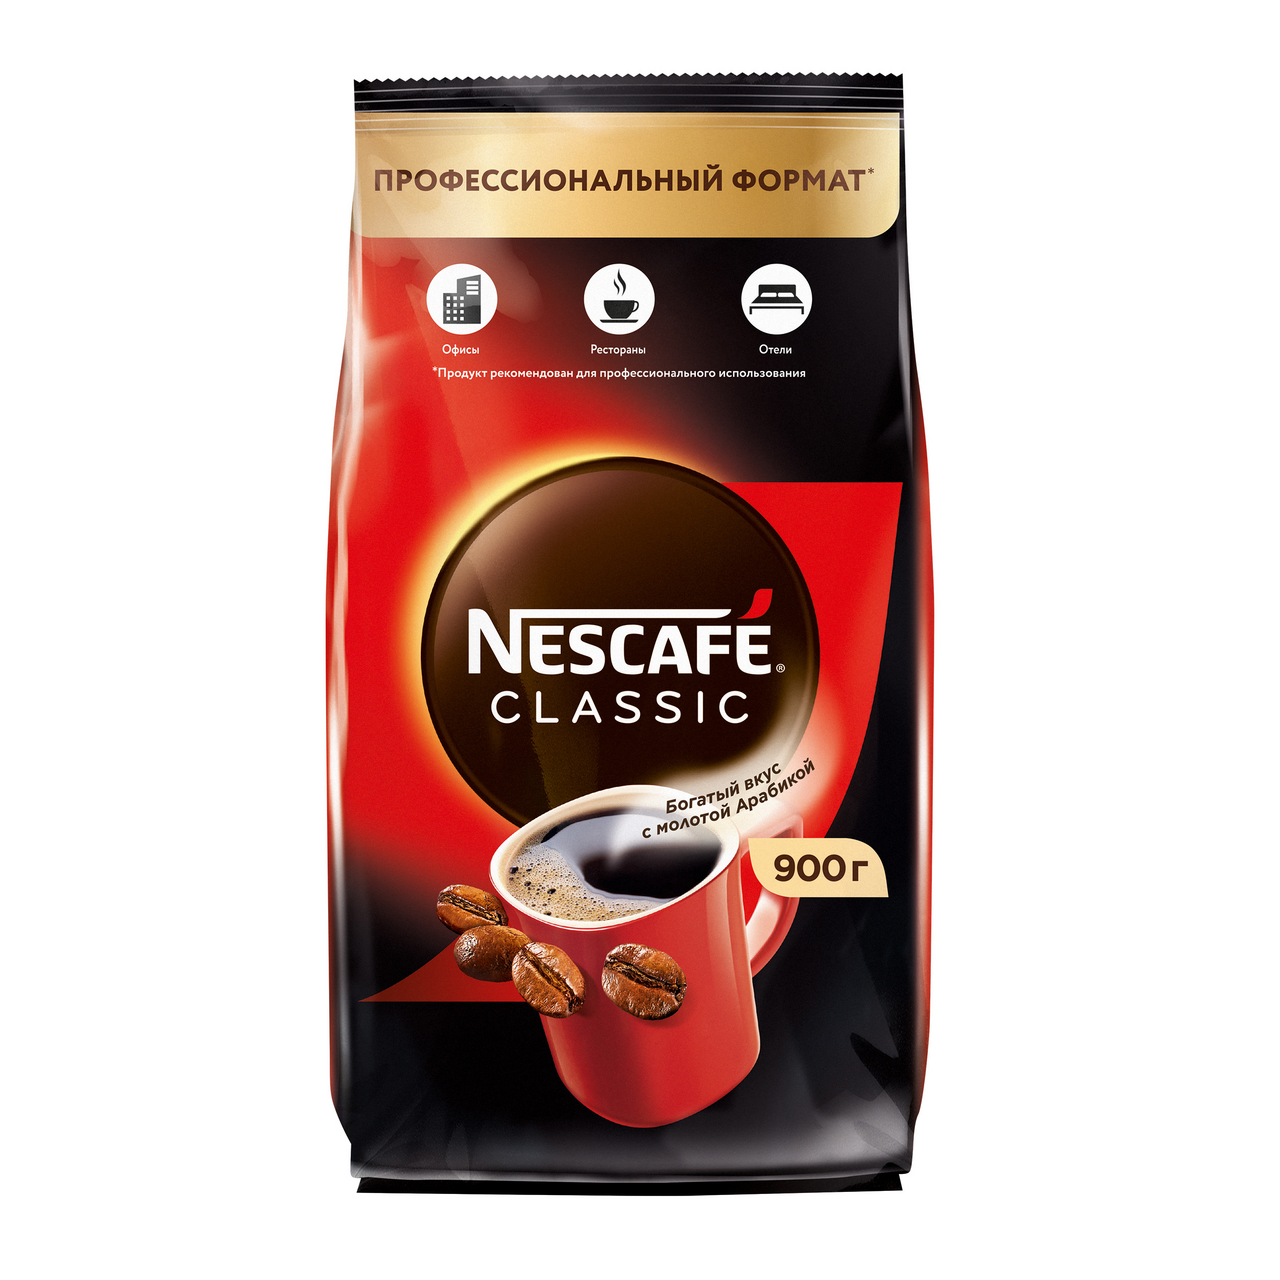 Nescafe uzb PNG. Кофе растворимый нескафе классик